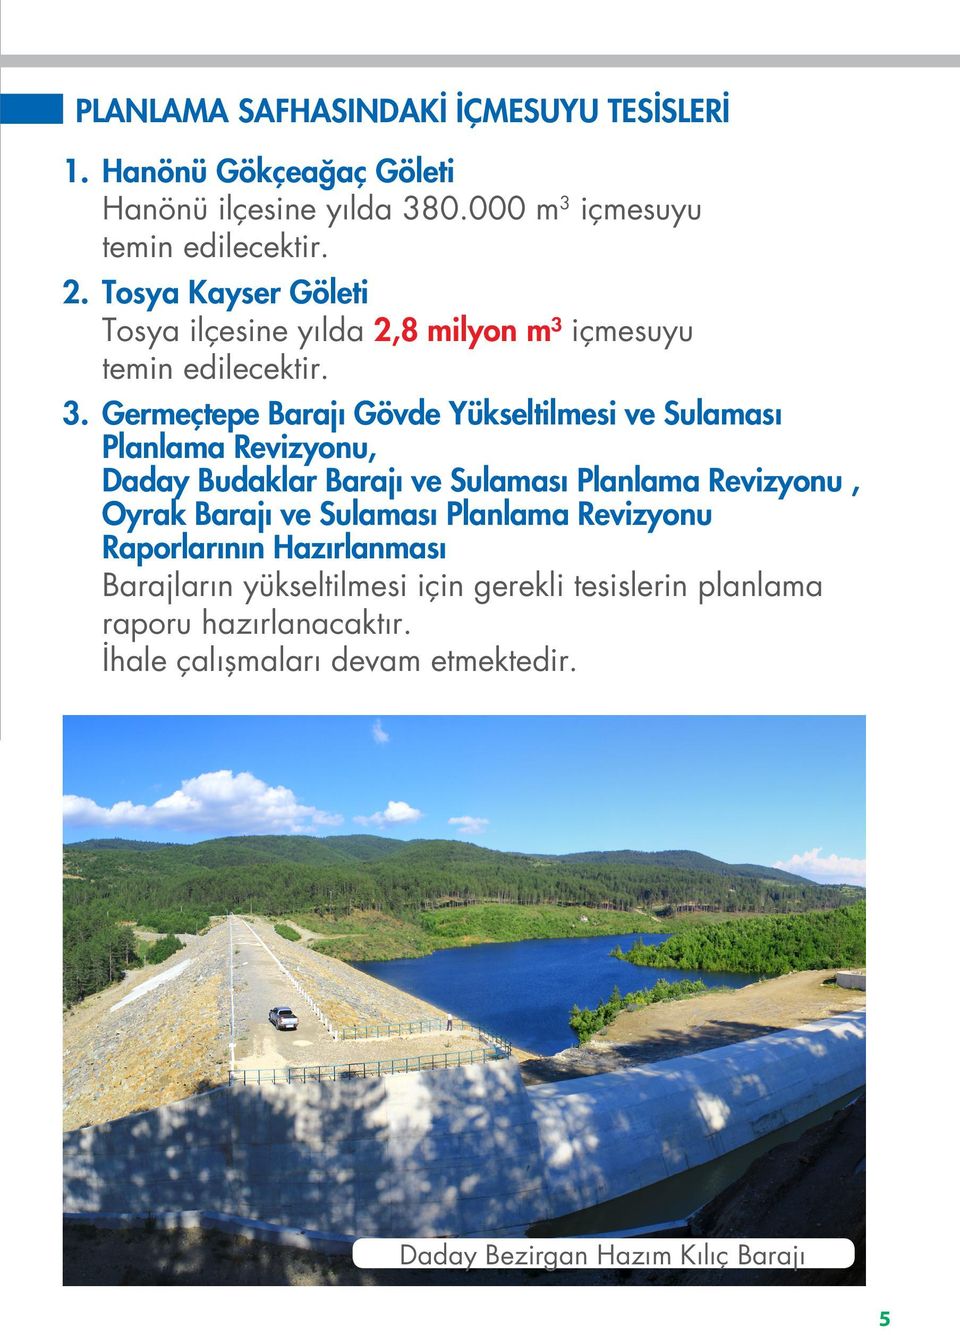 Germeçtepe Barajı Gövde Yükseltilmesi ve Sulaması Planlama Revizyonu, Daday Budaklar Barajı ve Sulaması Planlama Revizyonu, Oyrak Barajı ve